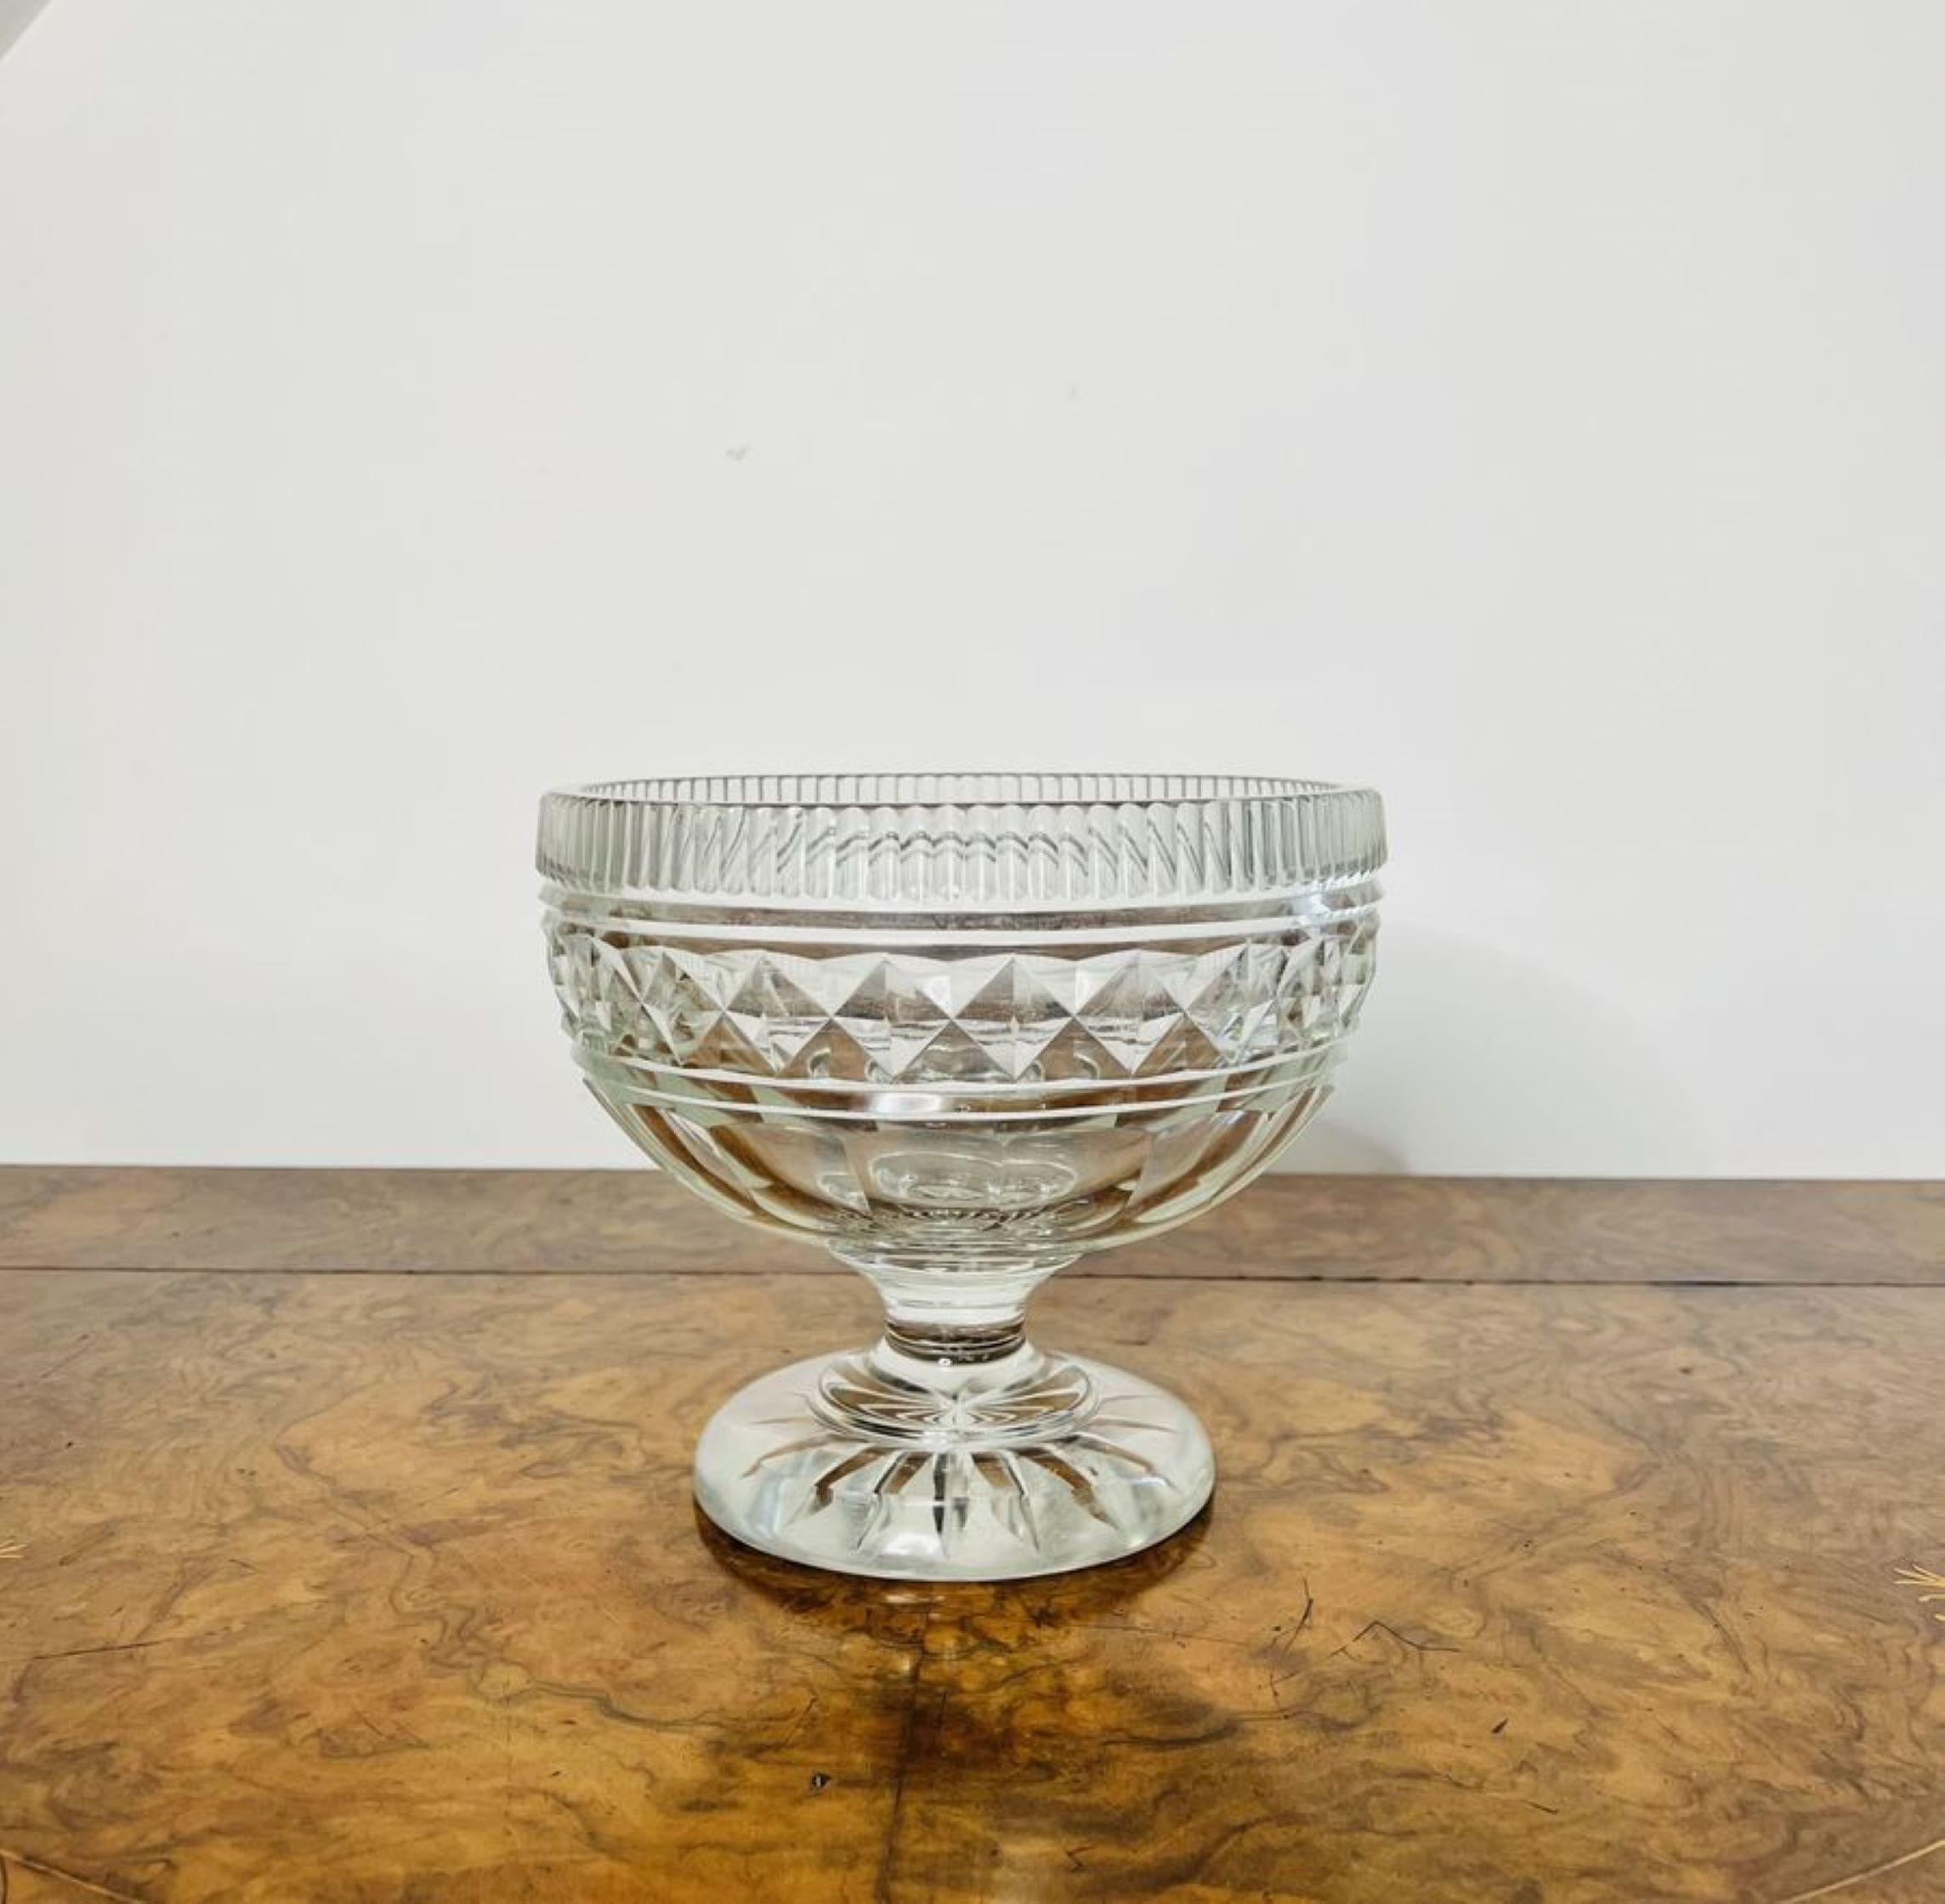 Hochwertige antike viktorianische Schale aus geschliffenem Glas mit einer hochwertigen viktorianischen Schale aus geschliffenem Glas, die auf einem Sockel mit einer runden Basis steht.

D. 1880